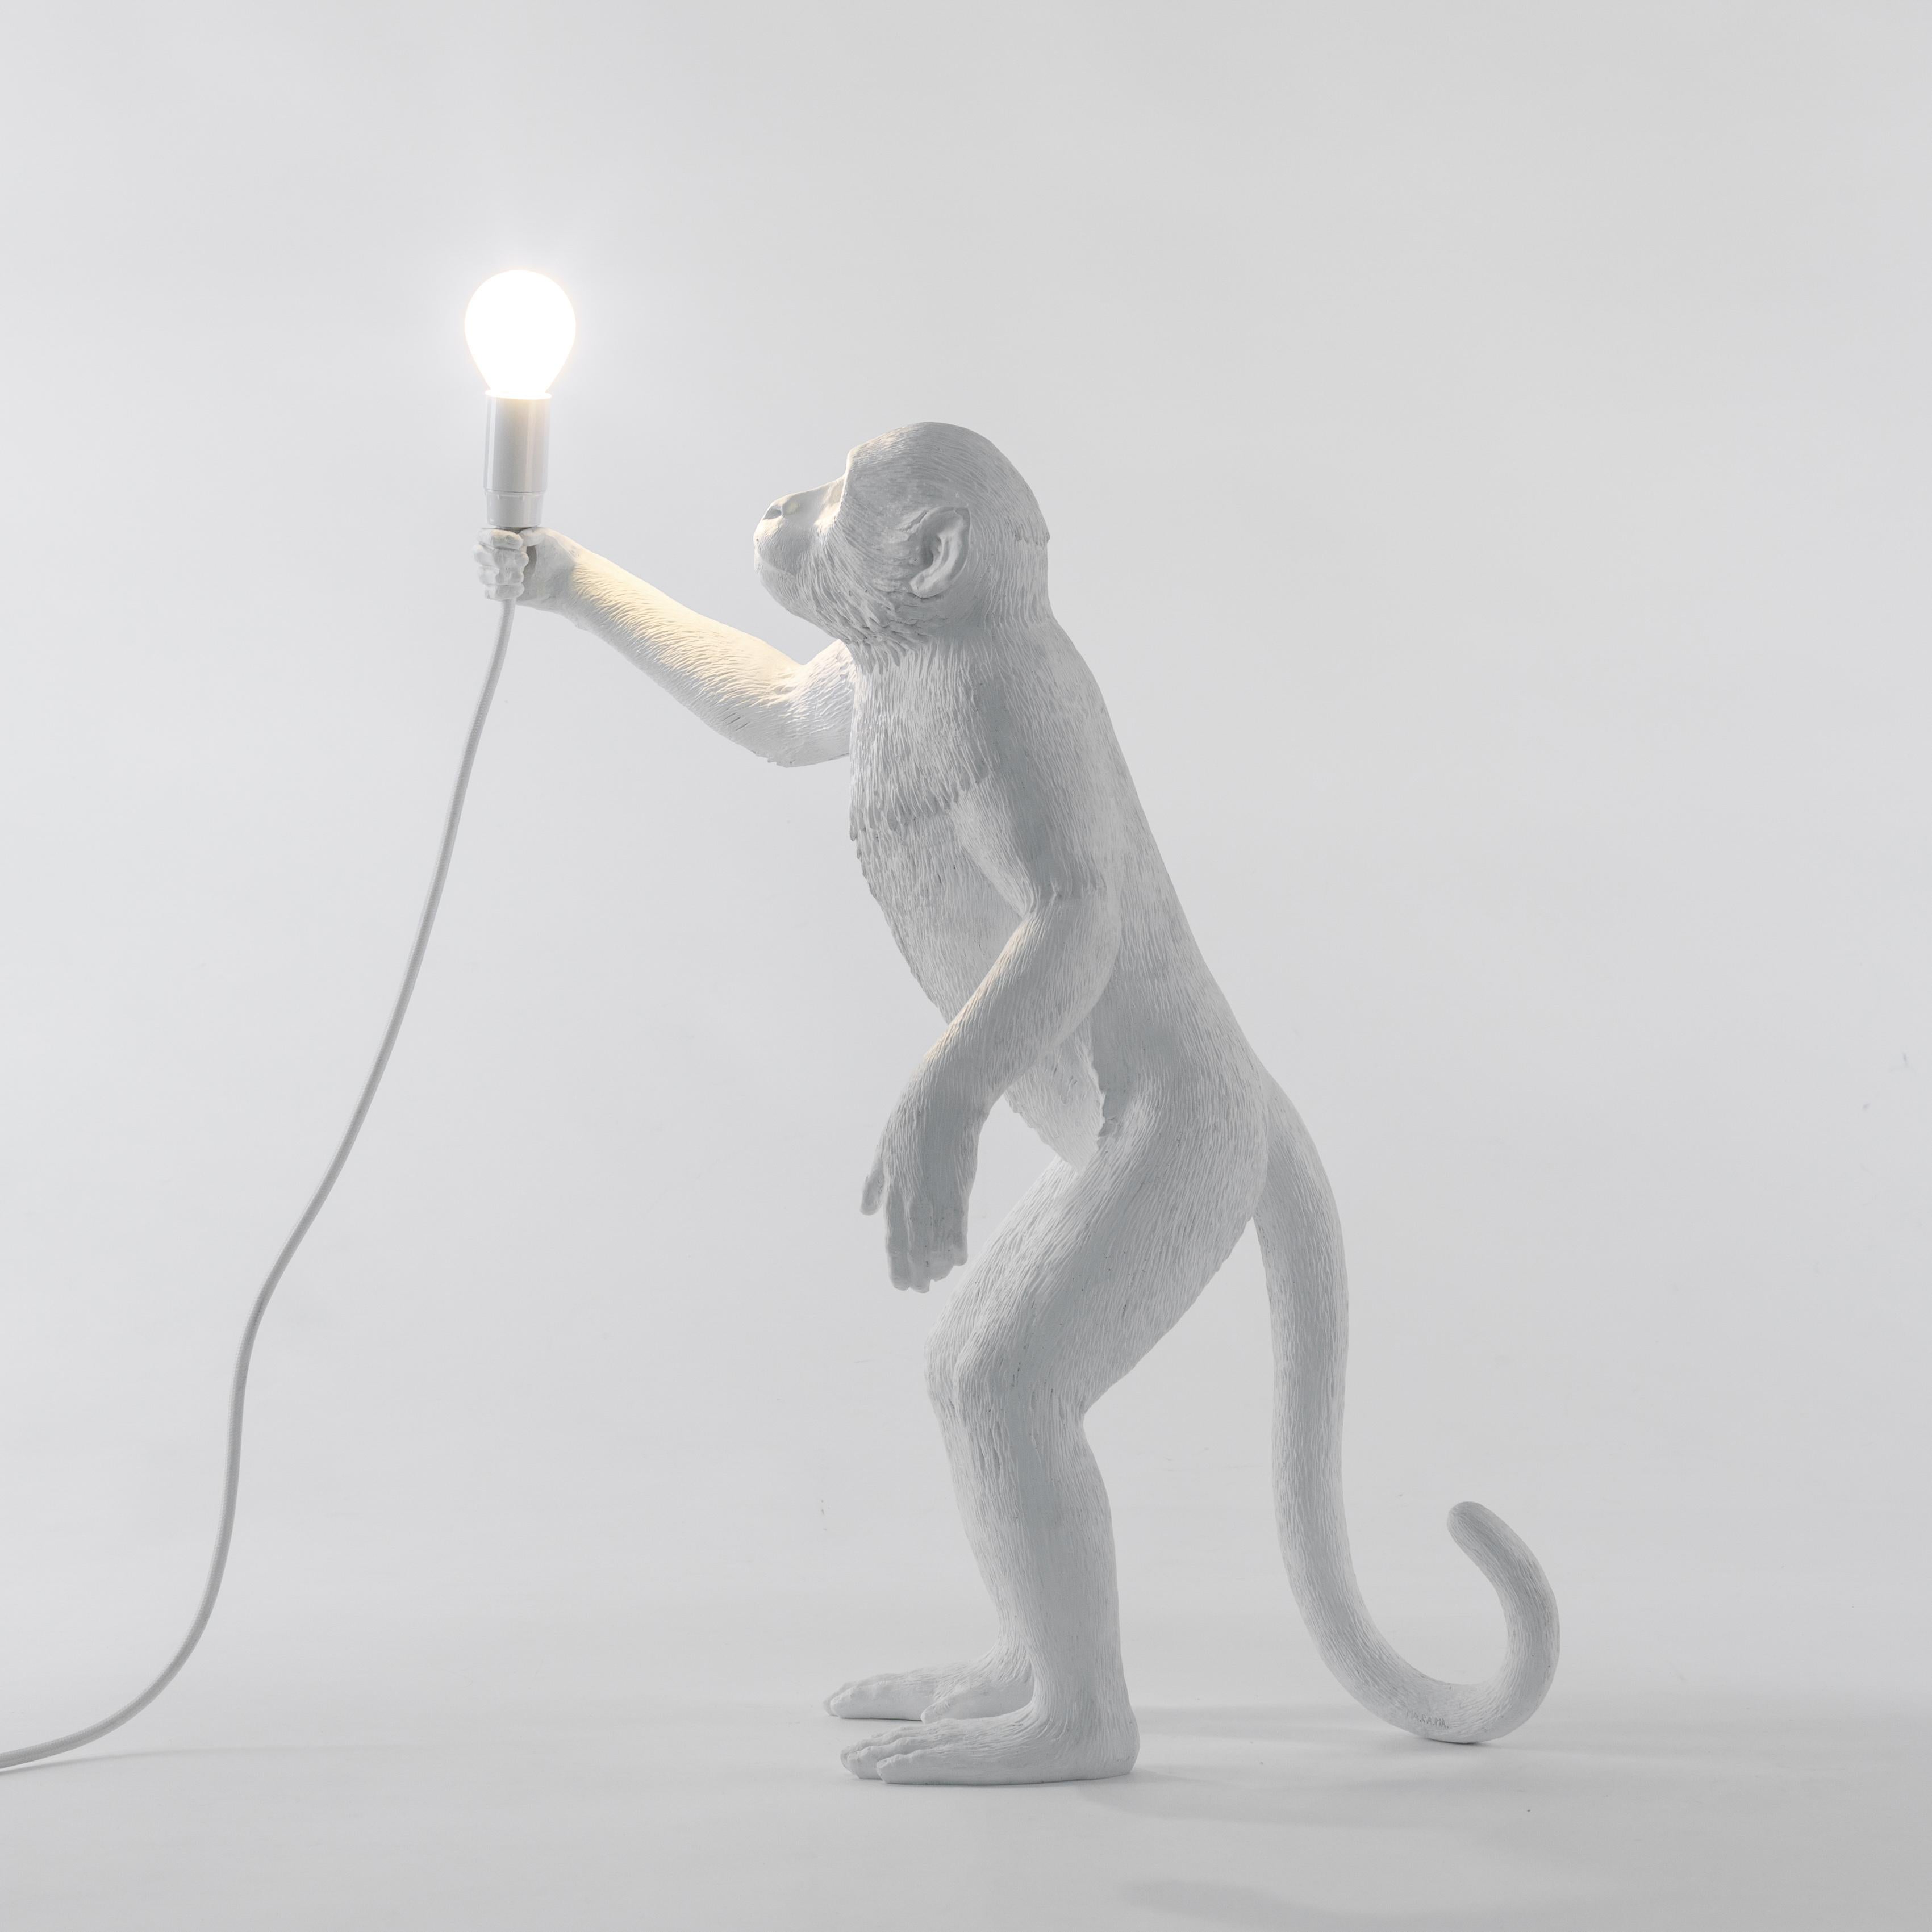 Un singe malicieux a volé votre lampe et c'est maintenant à vous de la récupérer. Cette lampe en résine blanche conçue par Marcantonio vous fait vous sentir comme dans un safari, perdu dans l'Afrique noire profonde.

- Lampe à pied
- Taille : cm.